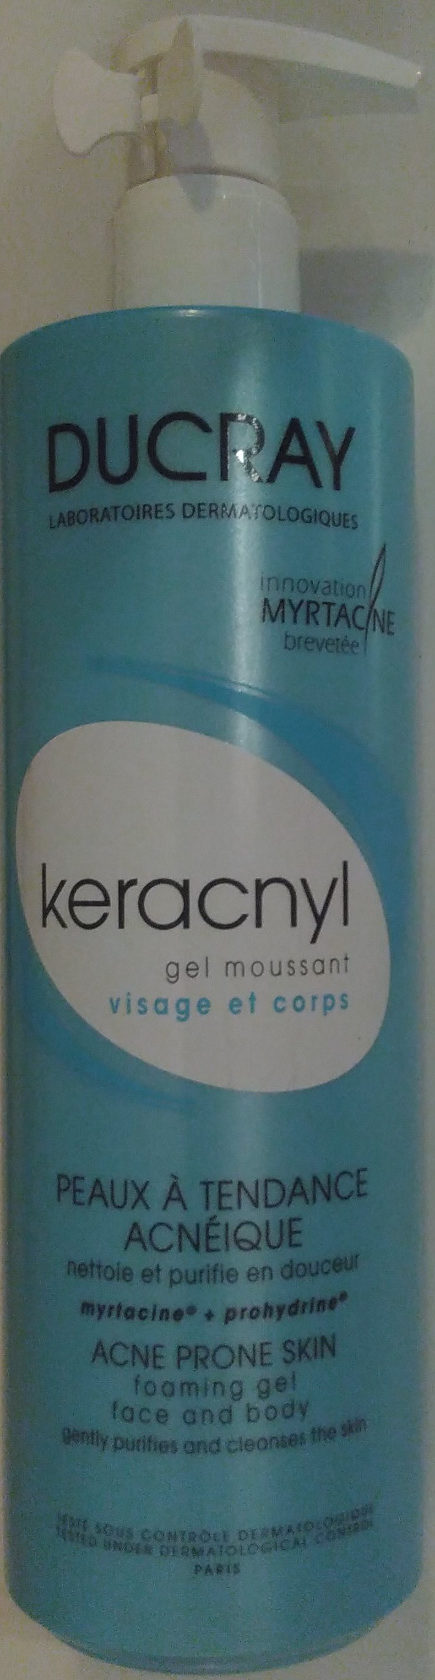 keracnyl - Produkt - fr